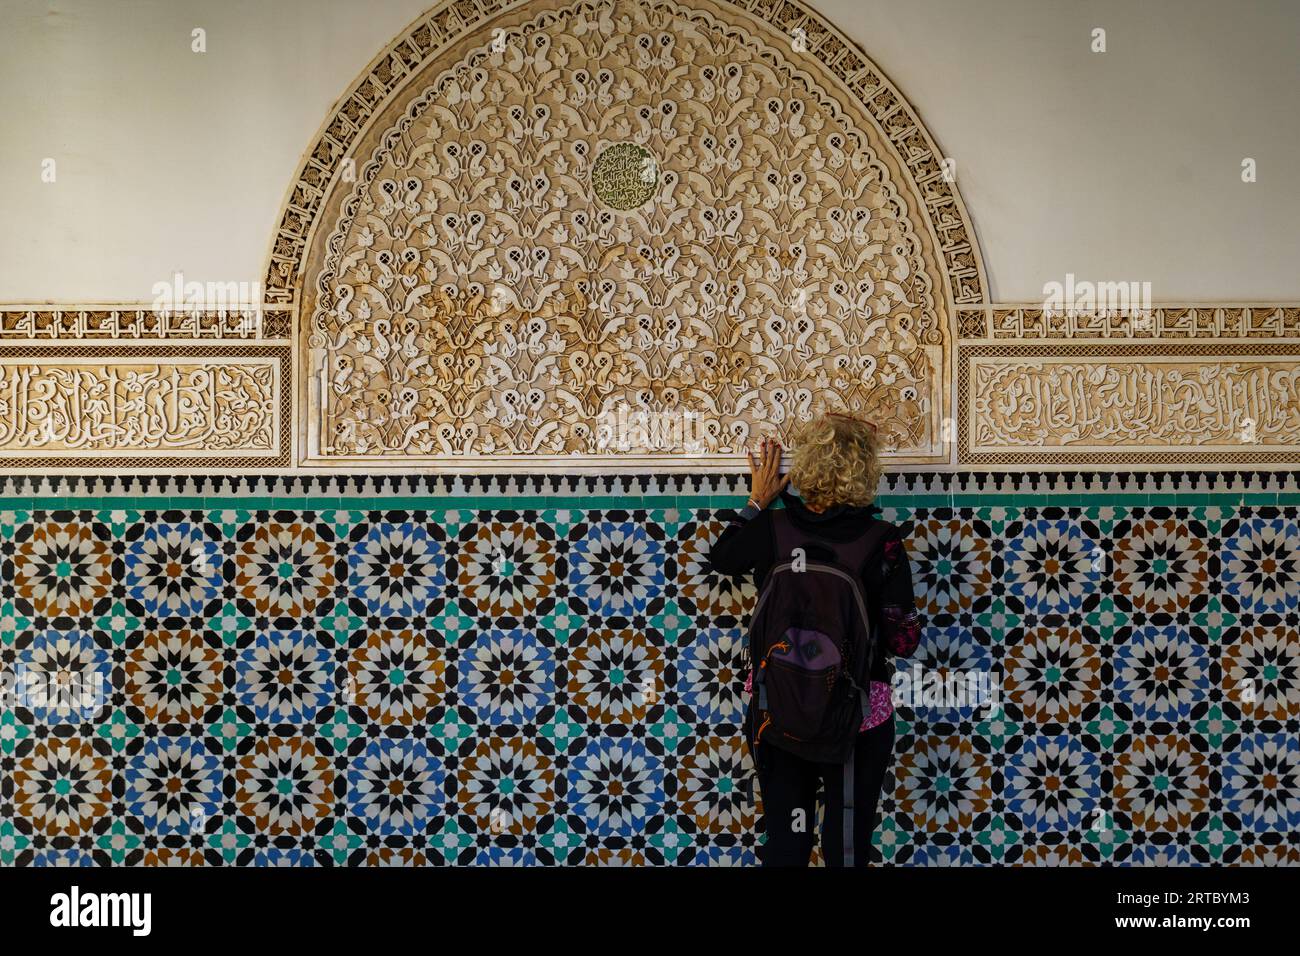 Afrique du Nord. Maroc. Marrakech. Madrasa Ben Youssef. La madrassah la plus grande et la plus importante du Maroc. Femme touriste regarde l'écriture coranique Banque D'Images